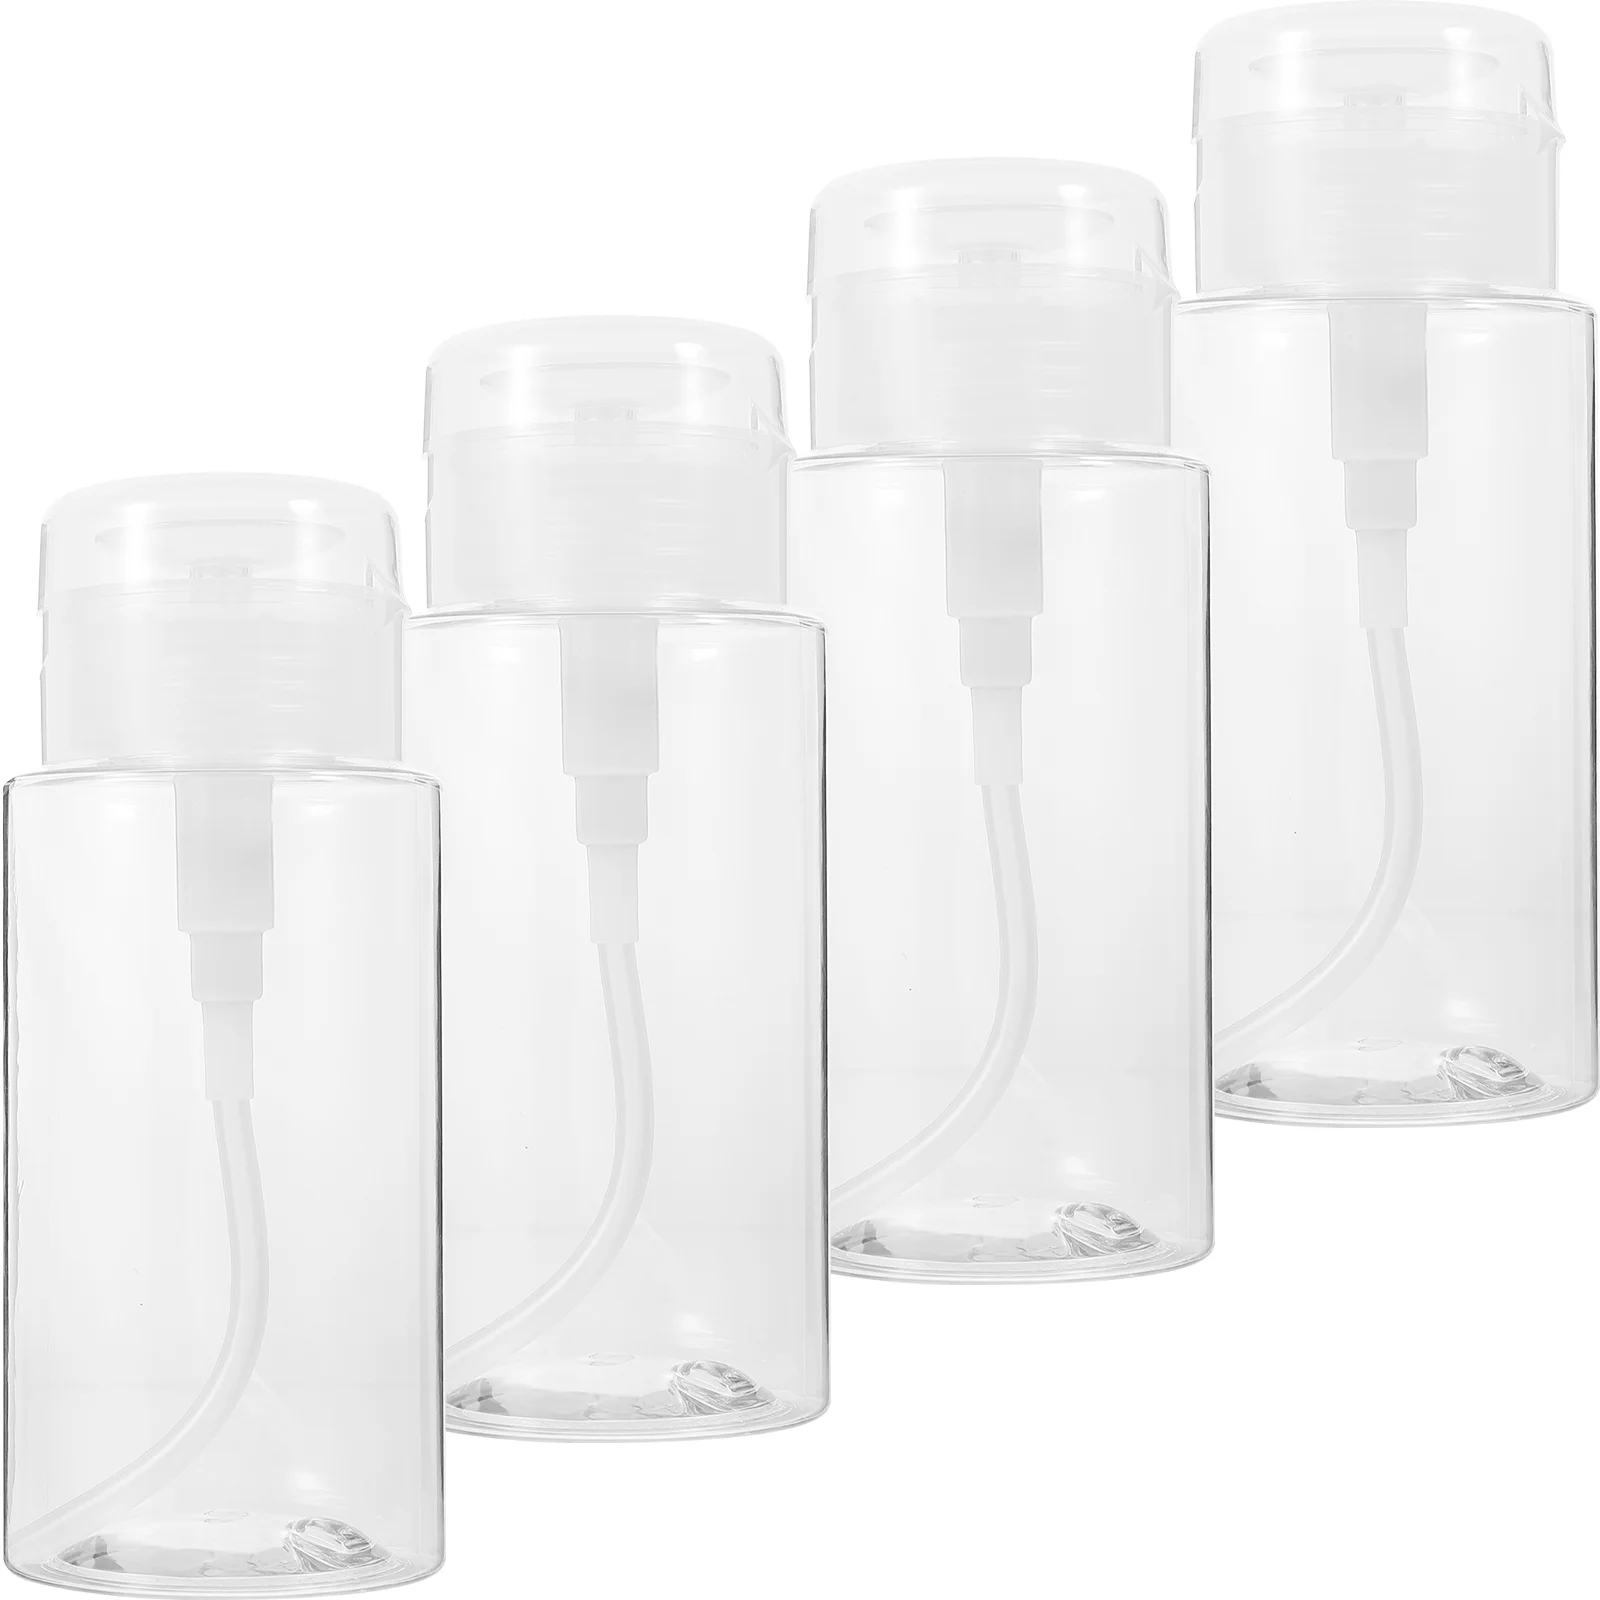 4 Pcs Pump Dispenser Bottle Plastic Go Containers Press Empty Bottles Mini Push Refillable Manicure Supplies